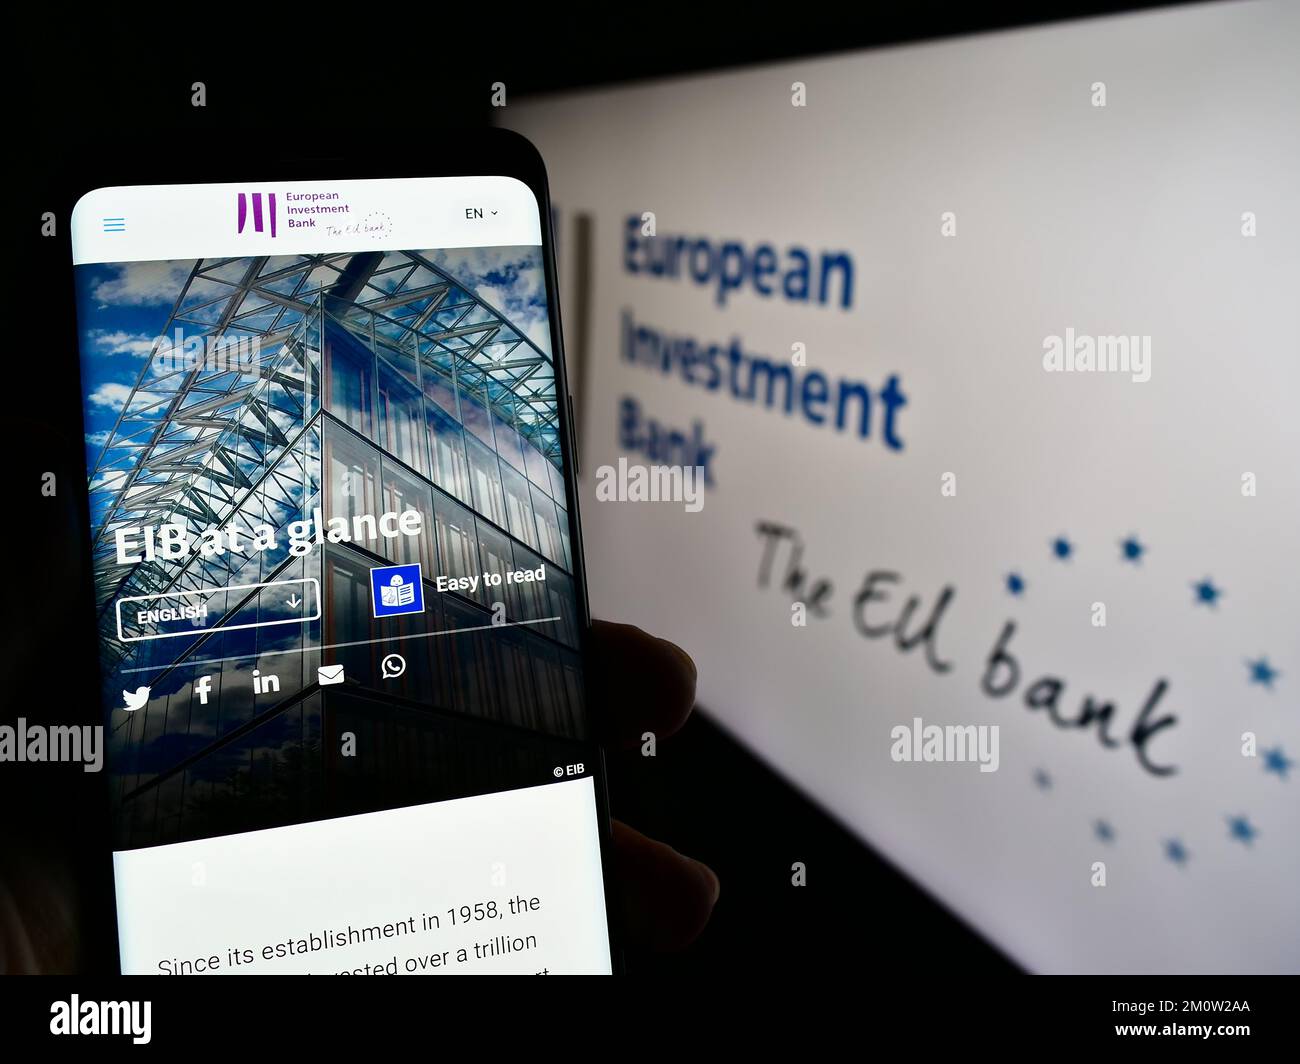 Personne tenant un téléphone portable avec page web de l'institution de l'UE Banque européenne d'investissement (BEI) à l'écran avec logo. Concentrez-vous sur le centre de l'écran du téléphone. Banque D'Images